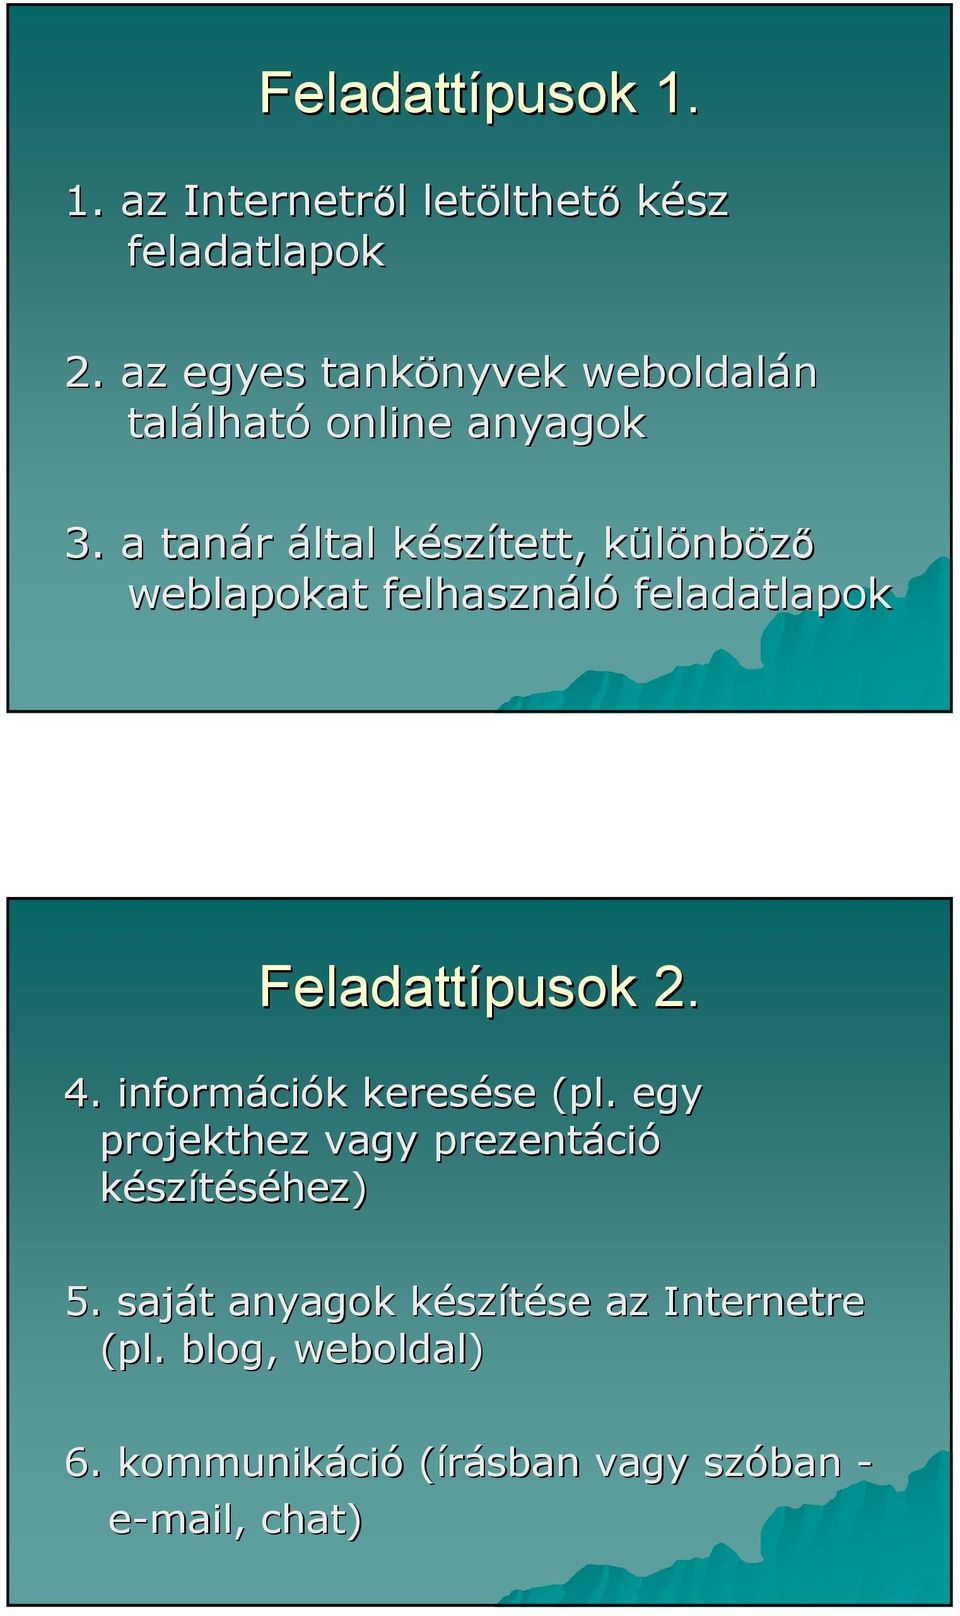 a tanár által készk szített, különbk nbözı weblapokat felhasználó feladatlapok Feladattípusok 2. 4.